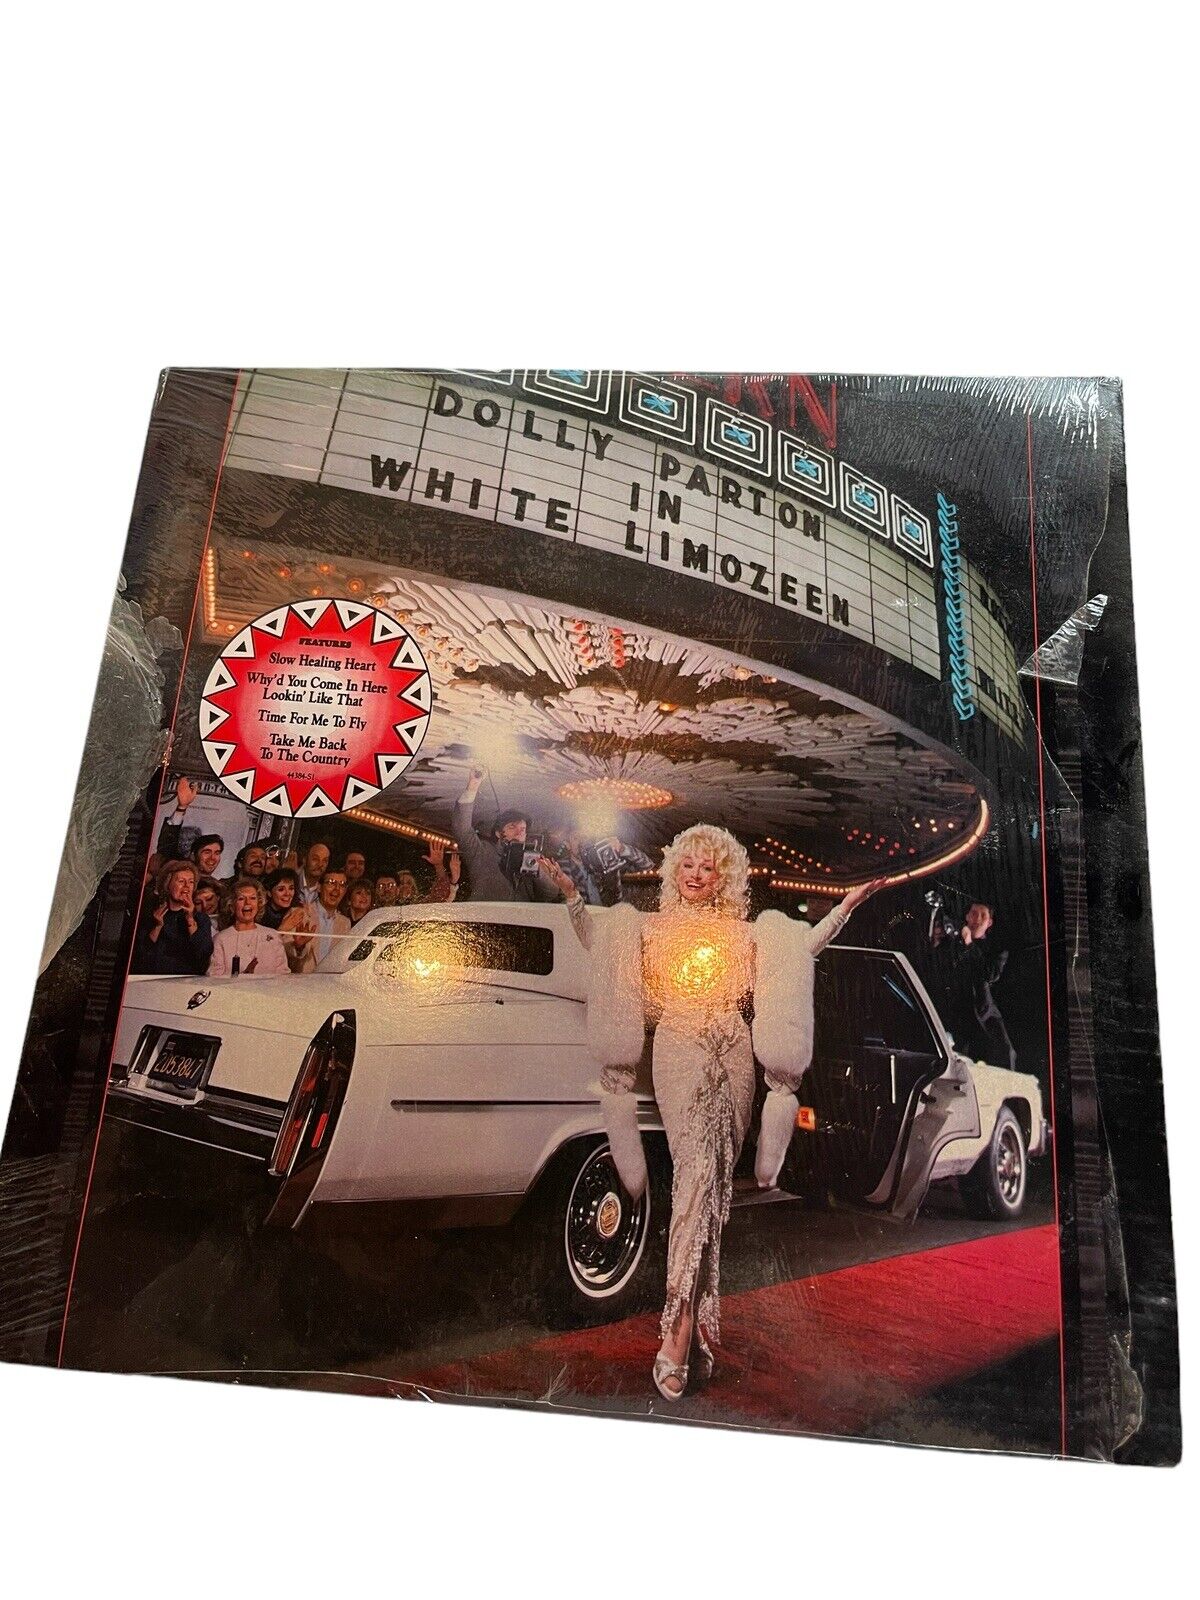 Dolly Parton ~ White Limozeen Vinyl LP Columbia 1989